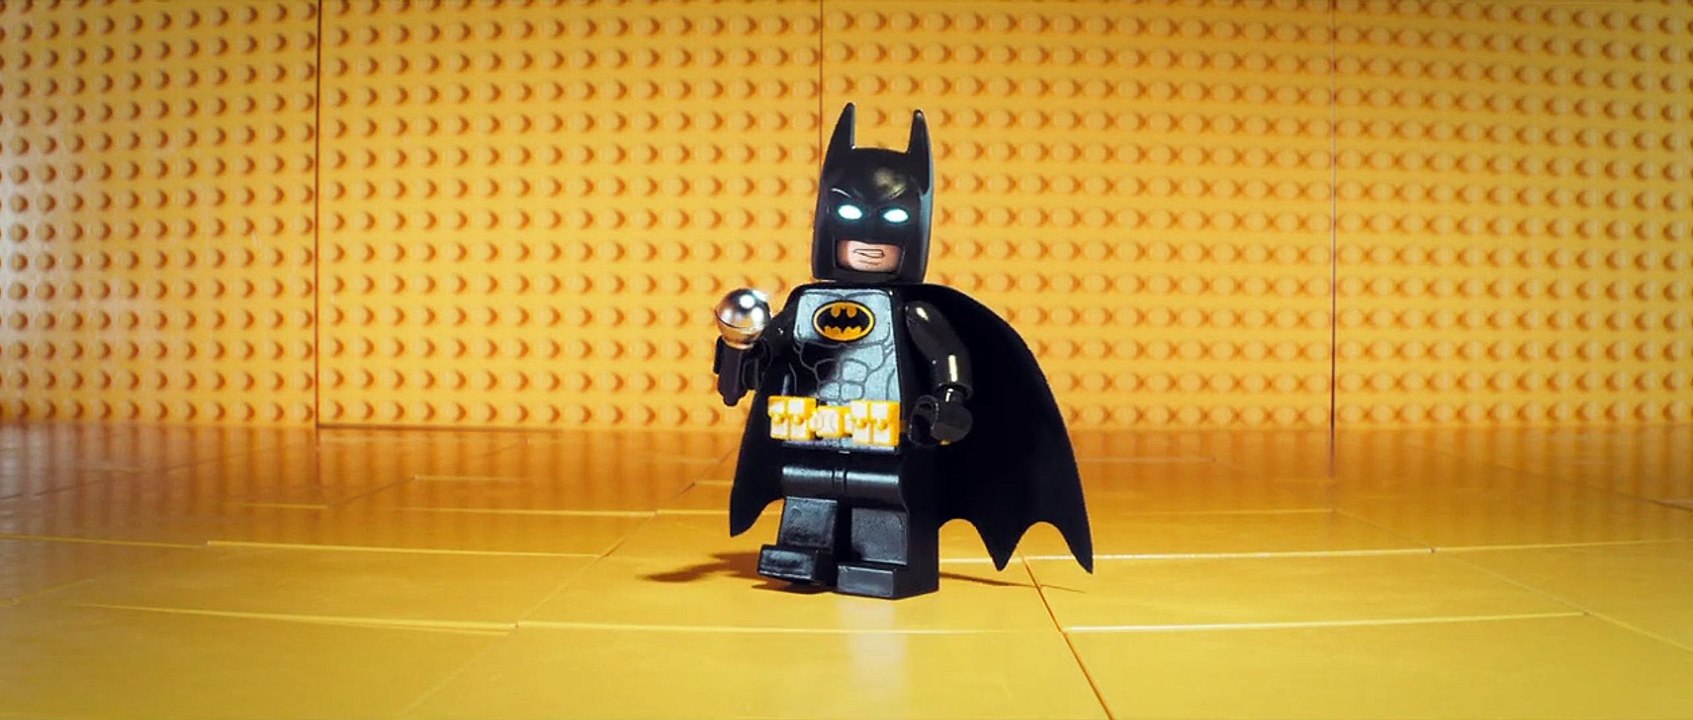 The Lego Batman Movie Trailer (3) DF